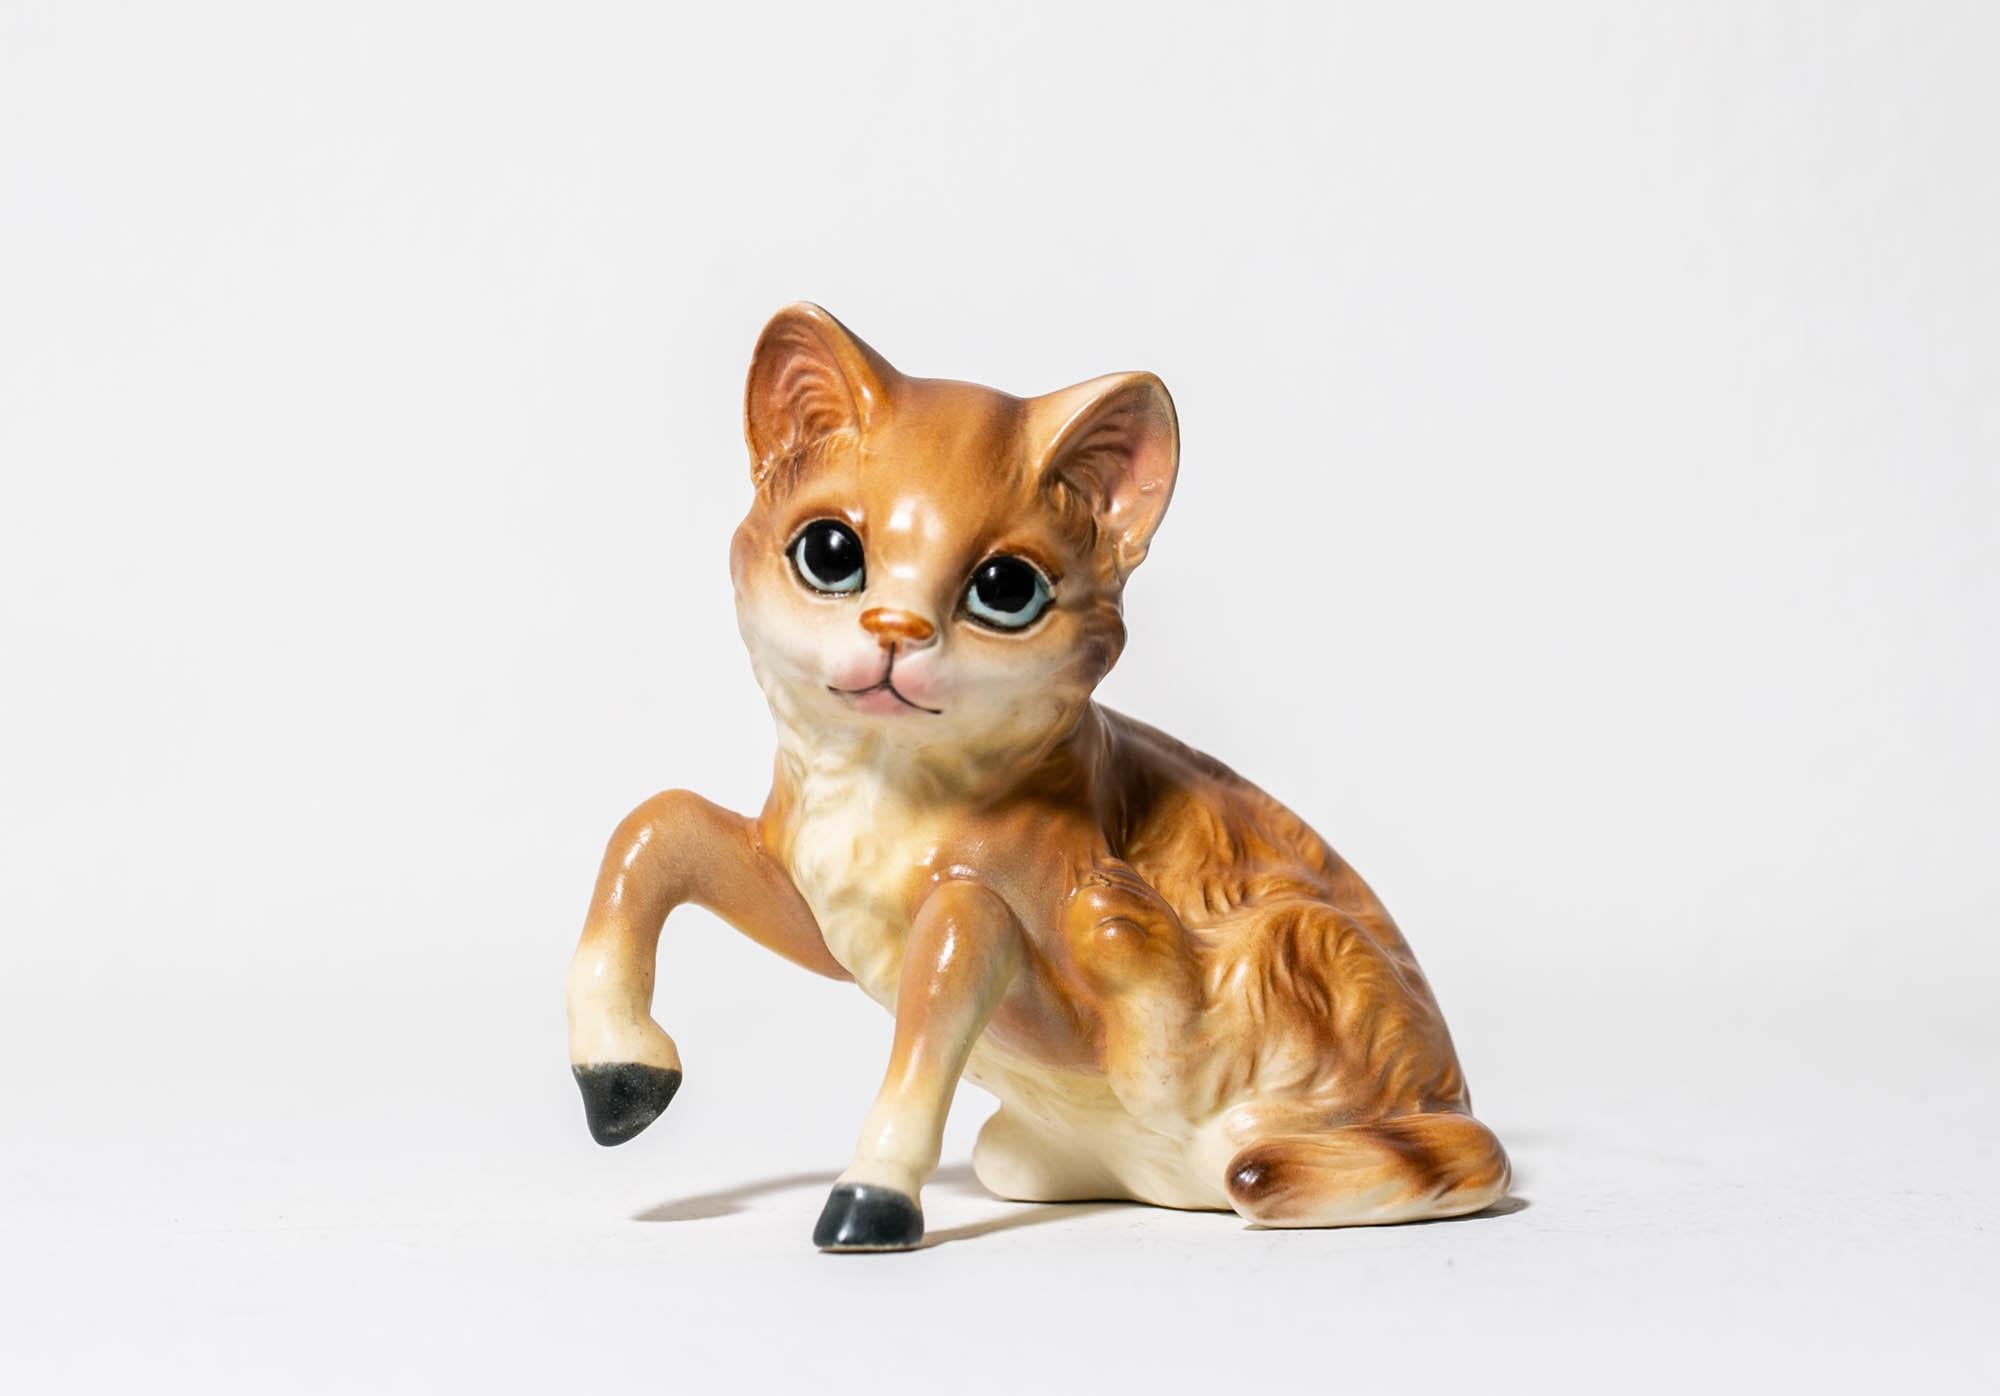 Debra Broz Figurative Sculpture - Horse Cat (Orange)